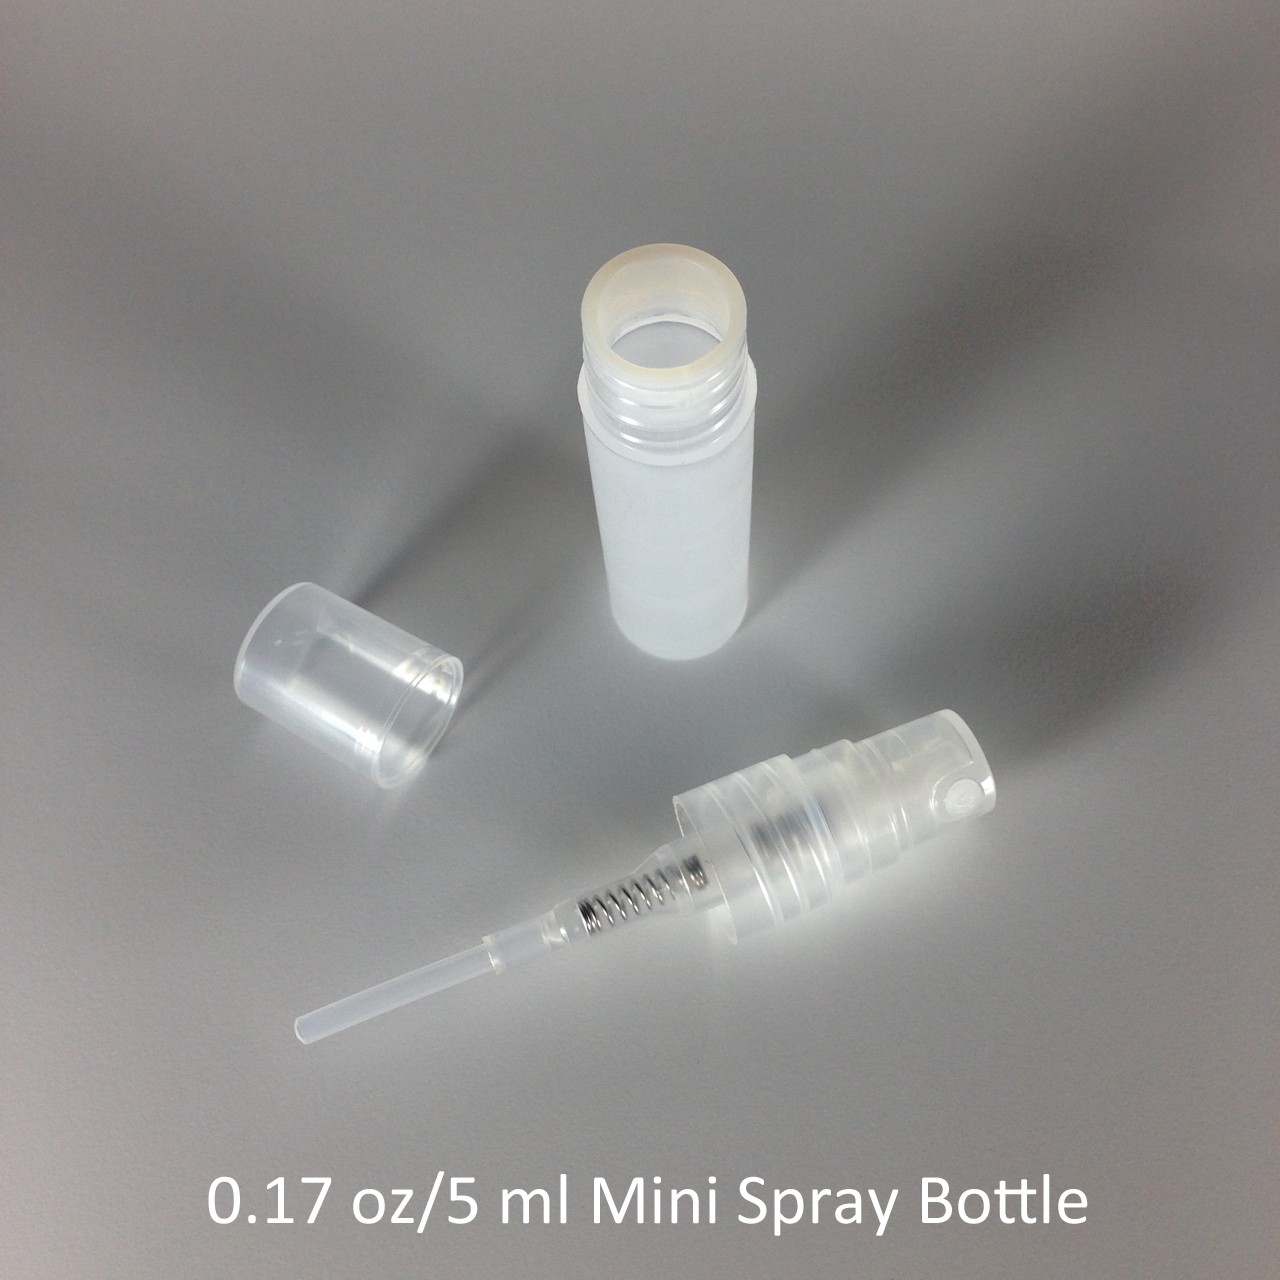 mini-spray-bottle-disassembled.jpg